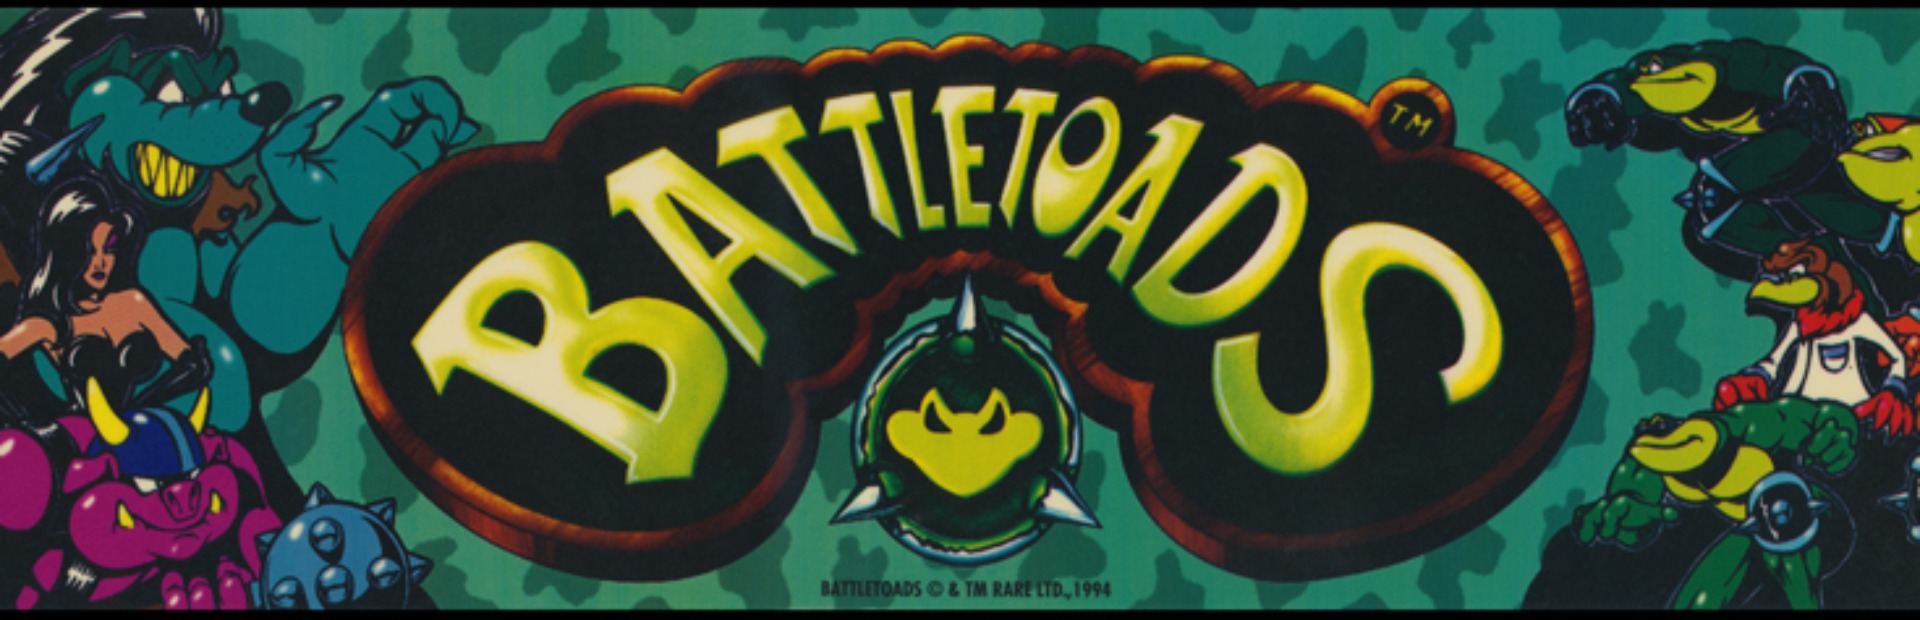 Композитор игры battletoads. Батлтоадс Раш. Battletoads Arcade. Игровой автомат Battletoads.